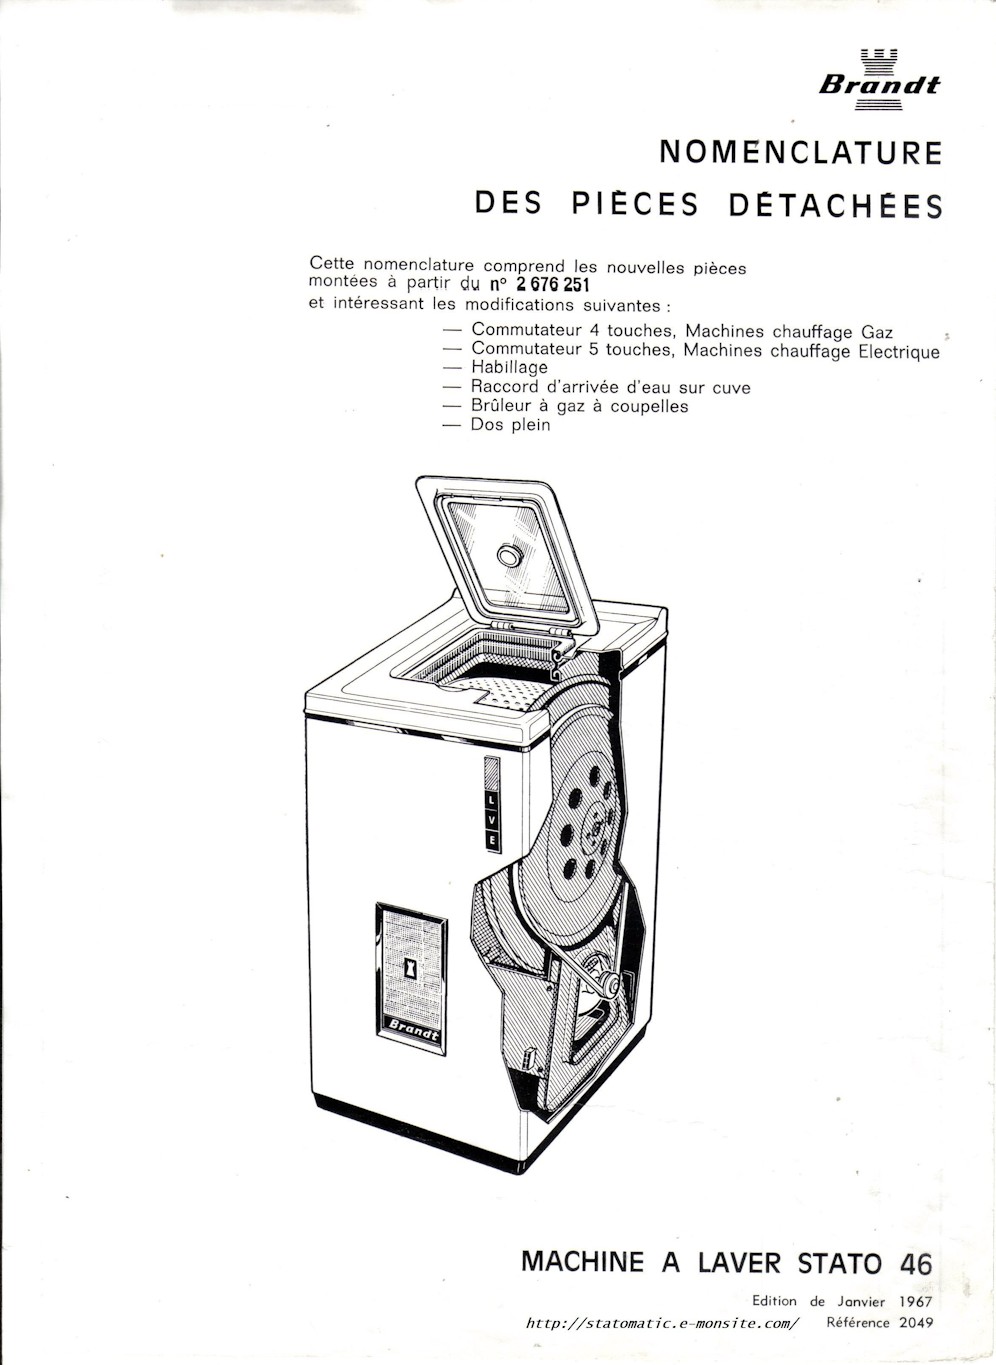 Machine à laver Brandt Stato 46, nomenclature des pièces détachées